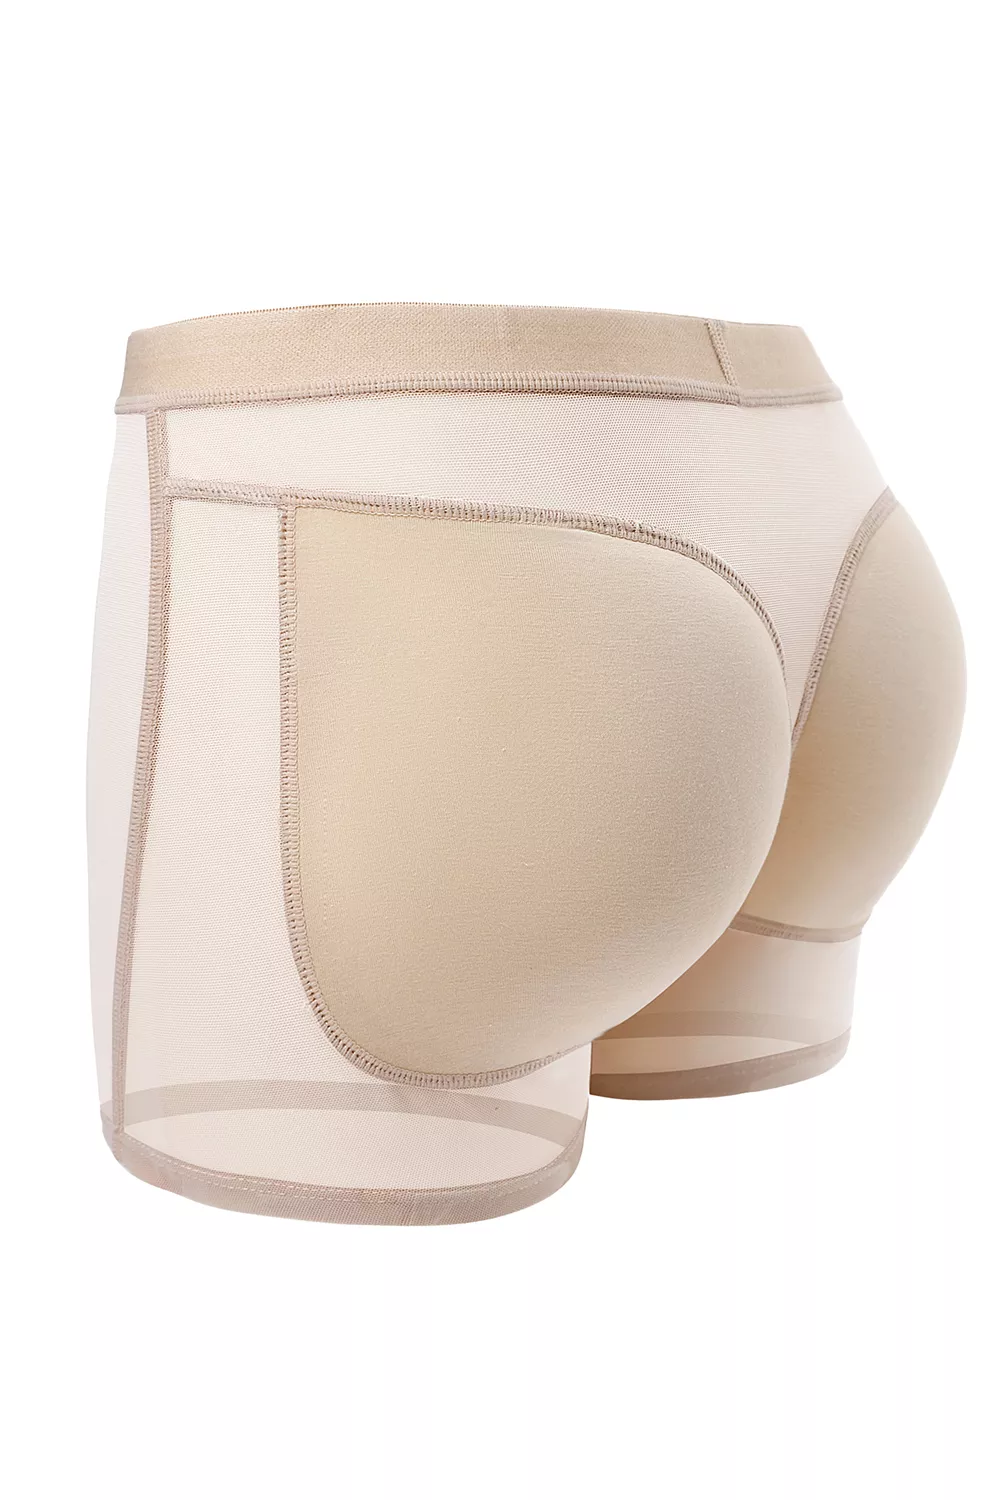 KAC Women's Mesh Breathable Buttocks Panties | KOODING